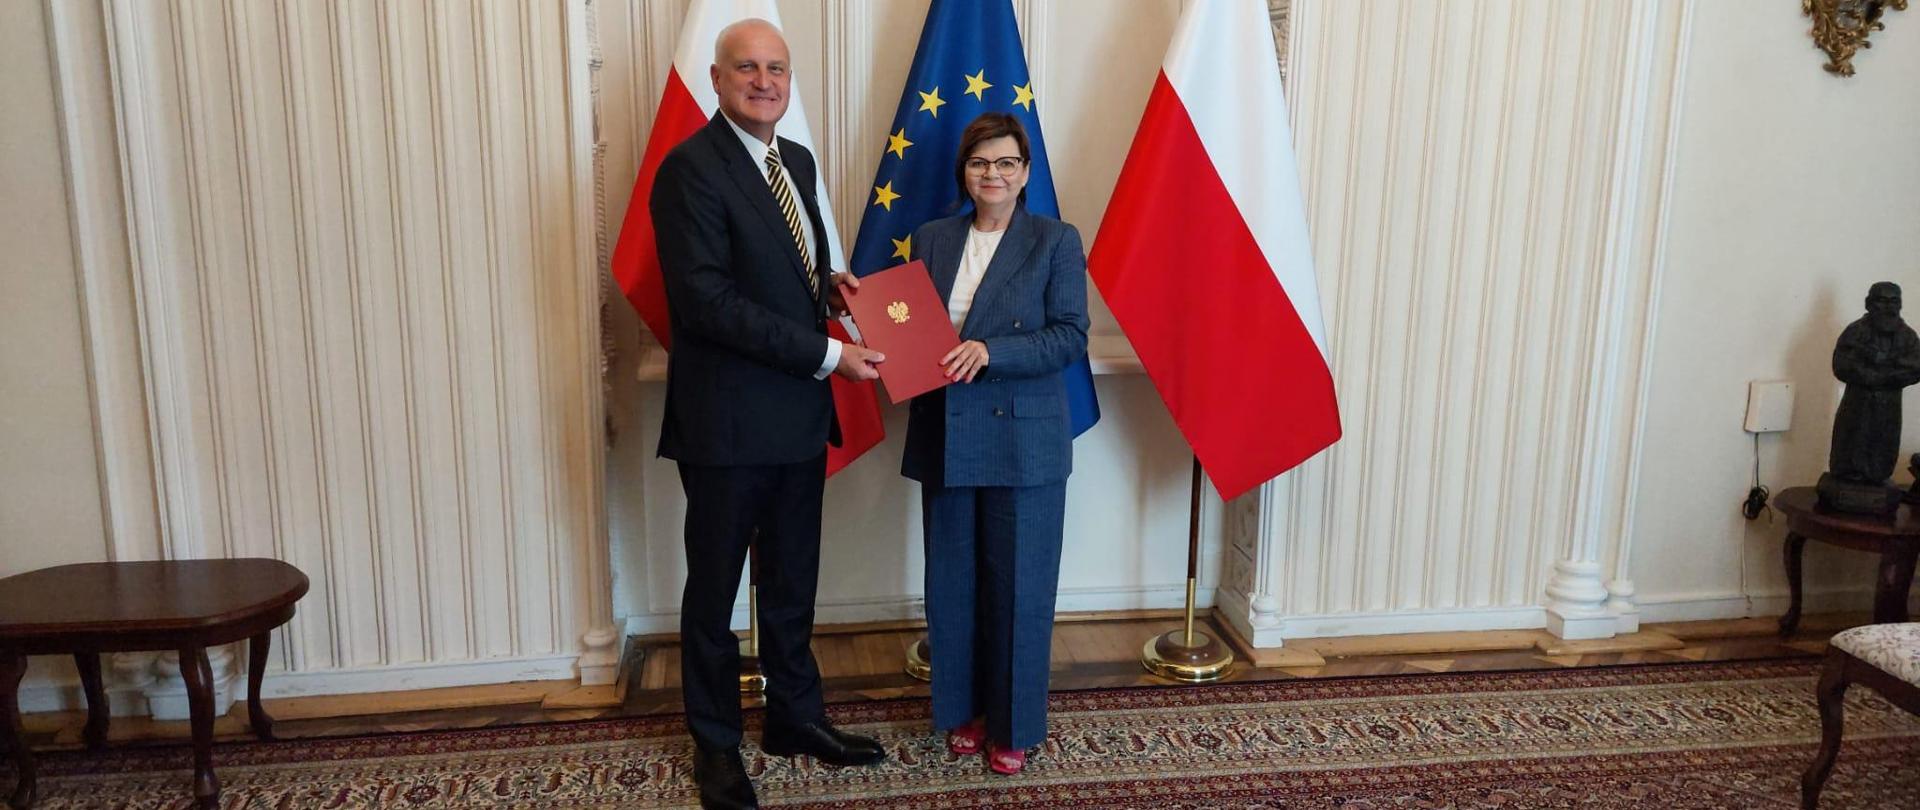 Zdjęcie minister zdrowia Izabeli Leszczyny i nowo powołanego wiceministra Jerzego Szafranowicza